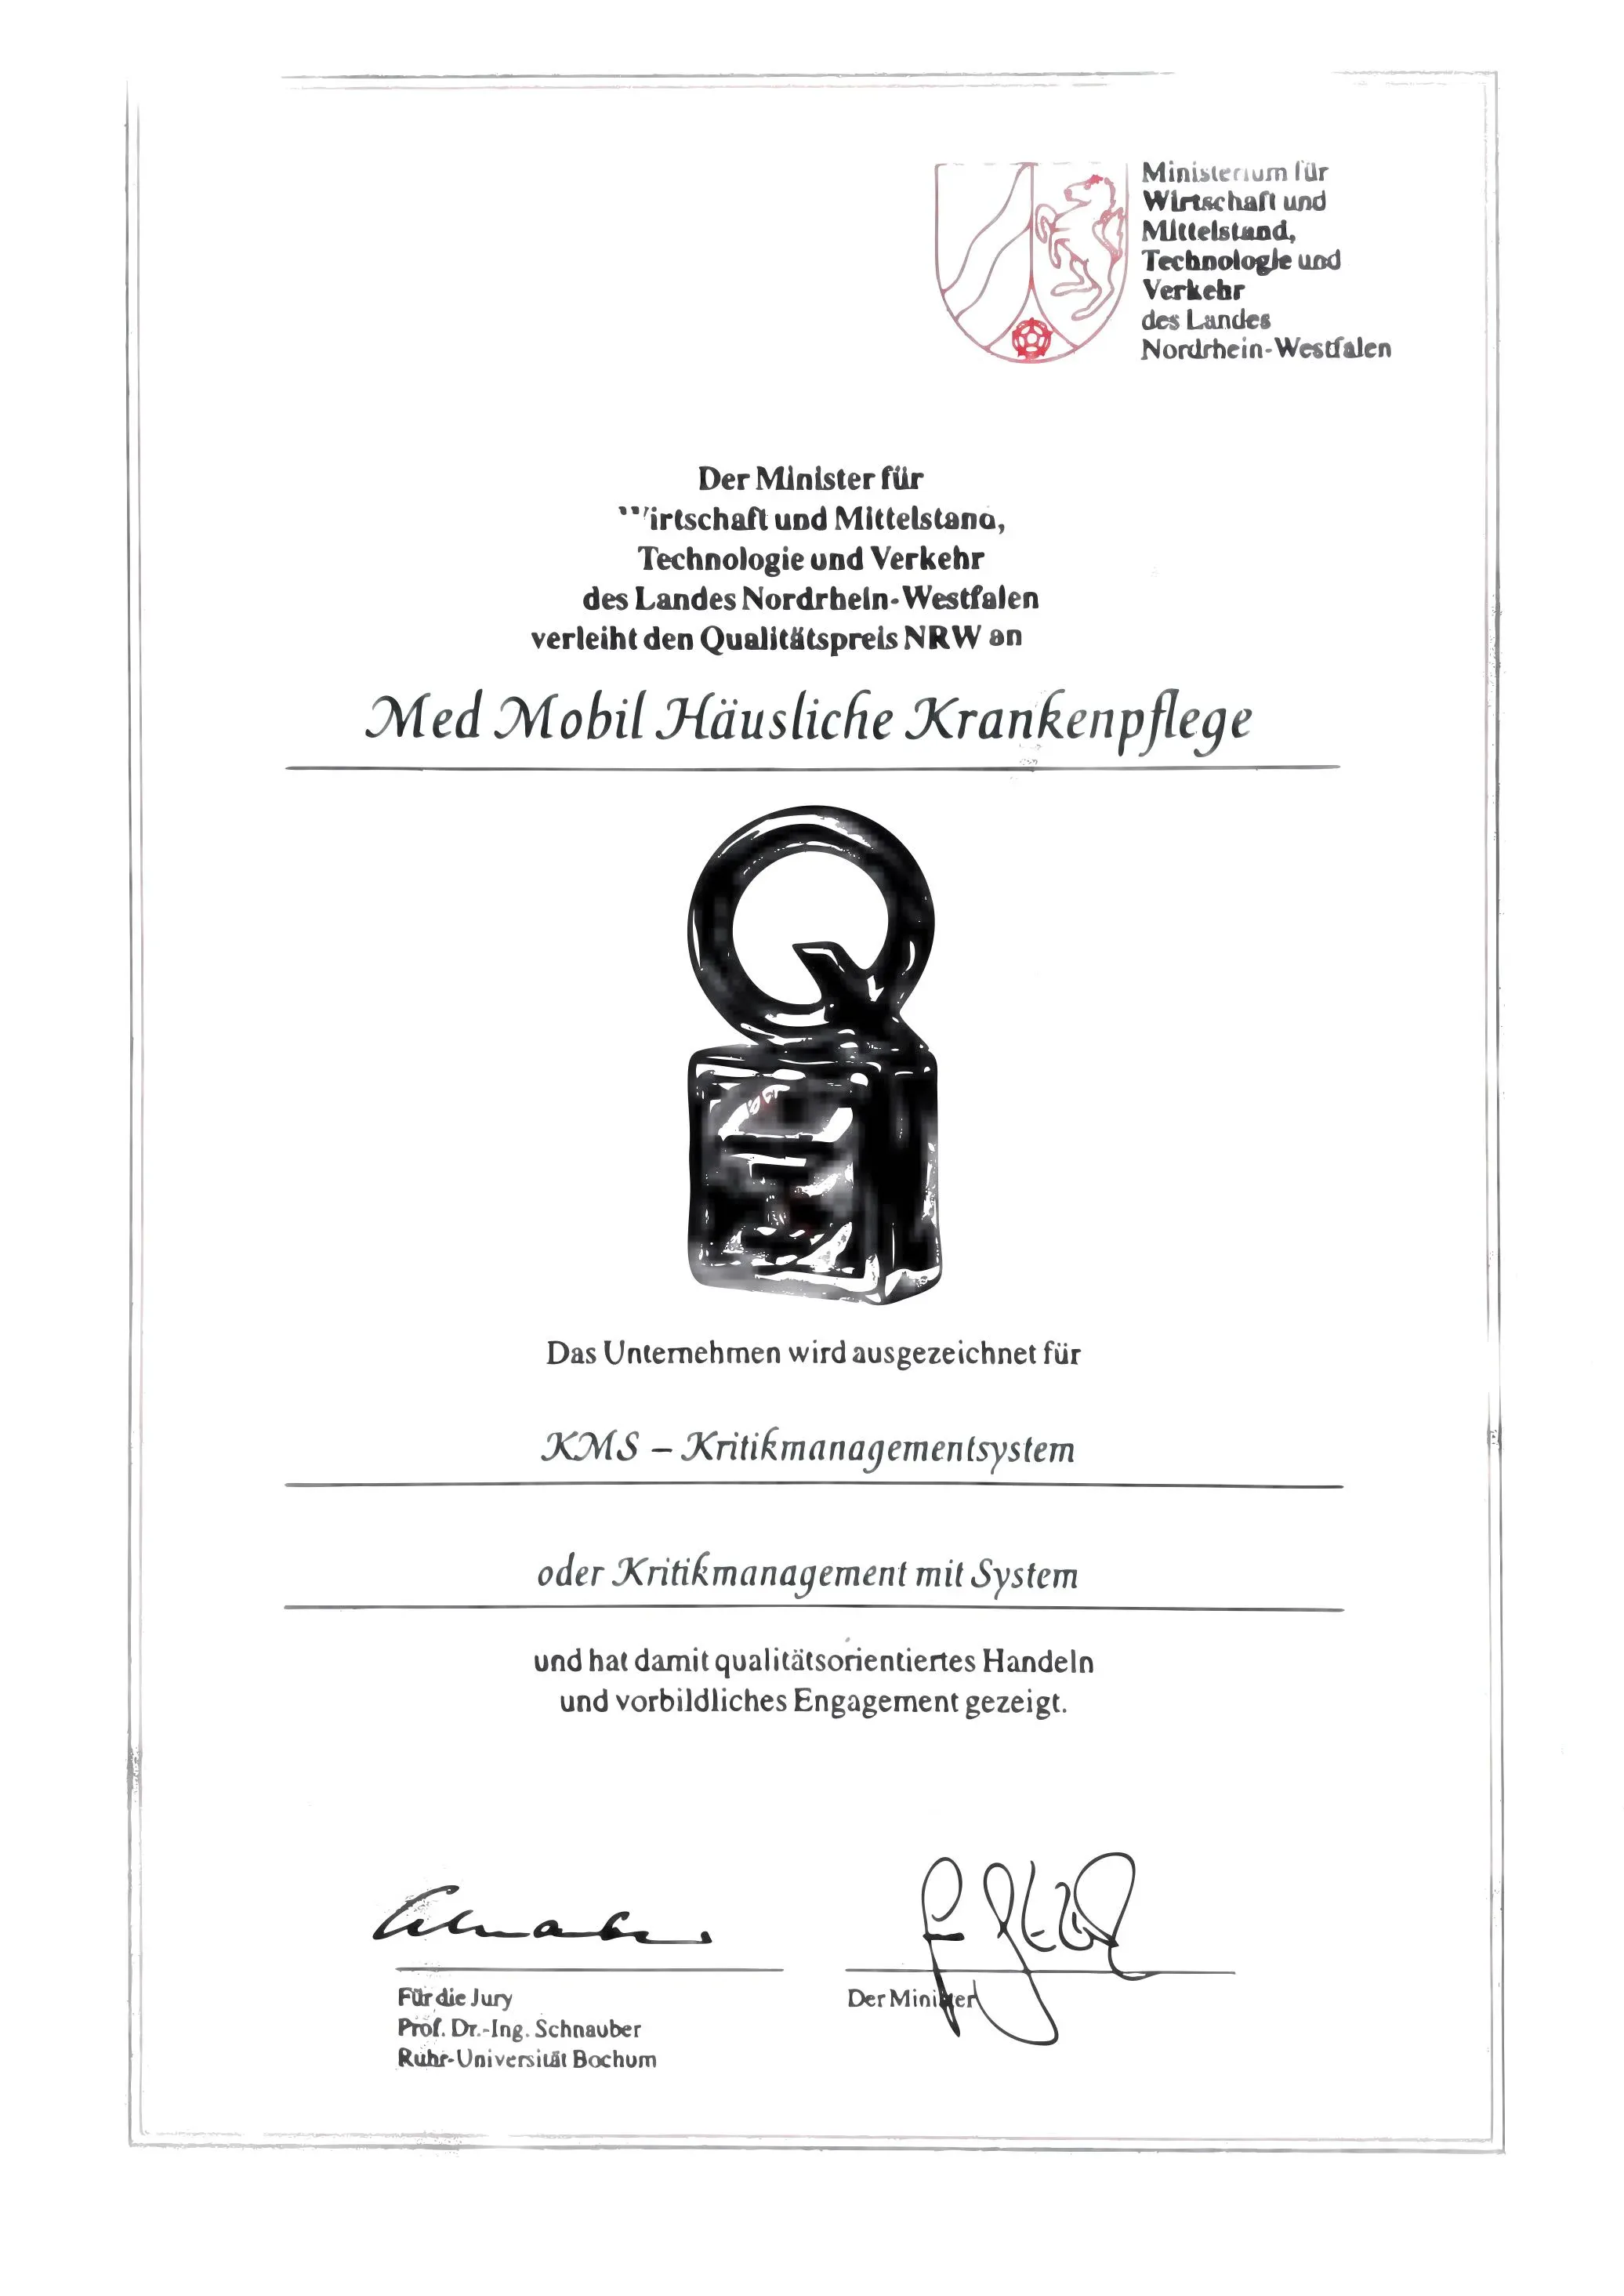 Qualitätspreis NRW Auszeichnung für Med Mobil